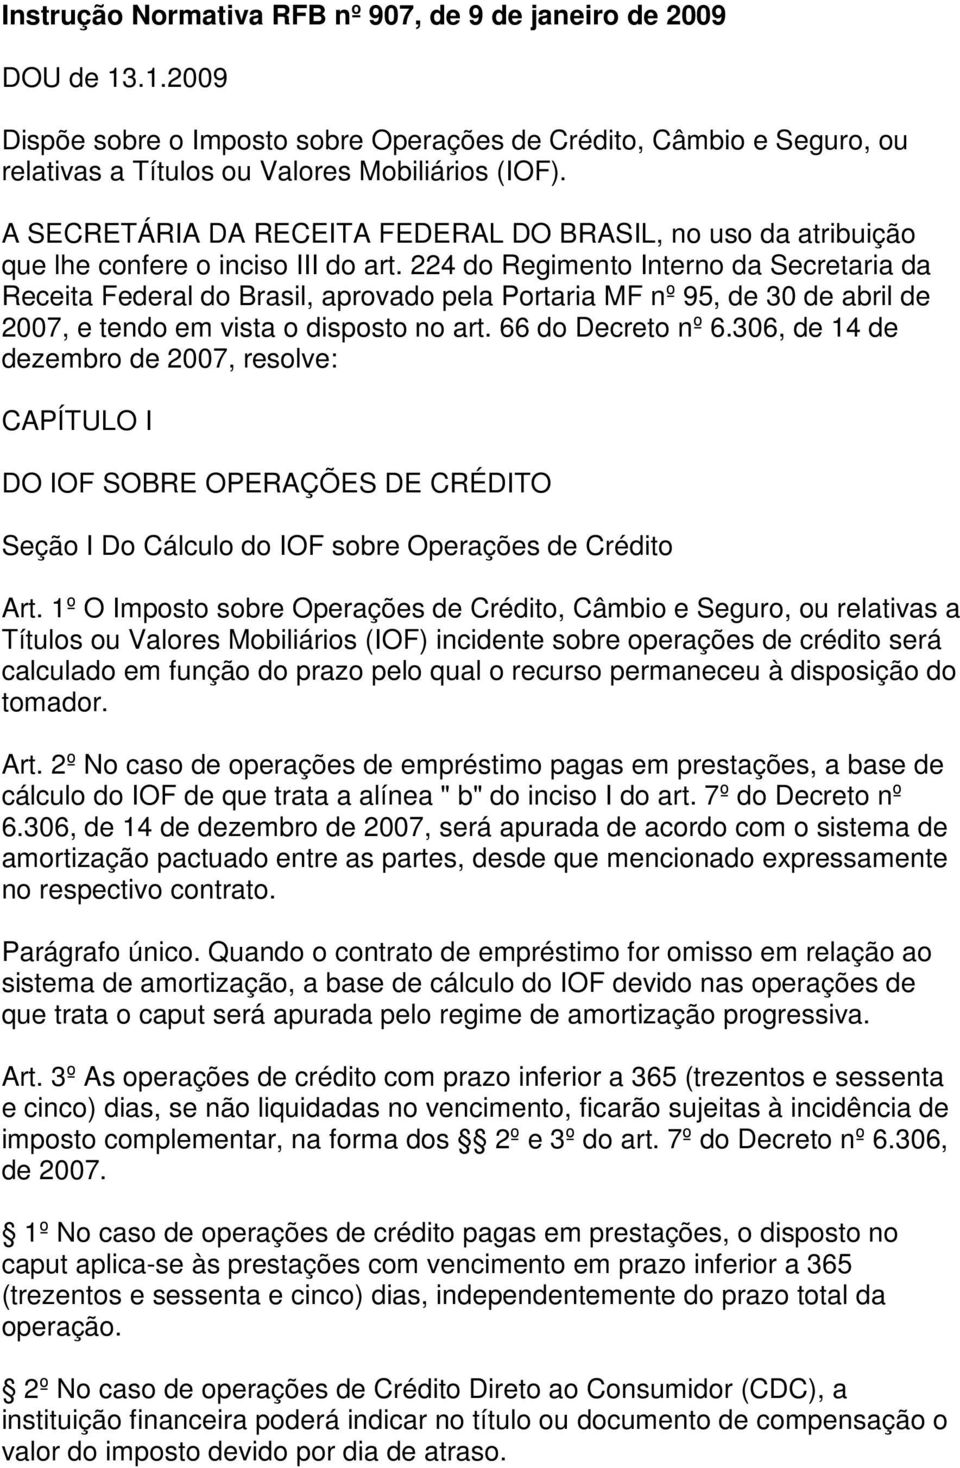 224 do Regimento Interno da Secretaria da Receita Federal do Brasil, aprovado pela Portaria MF nº 95, de 30 de abril de 2007, e tendo em vista o disposto no art. 66 do Decreto nº 6.